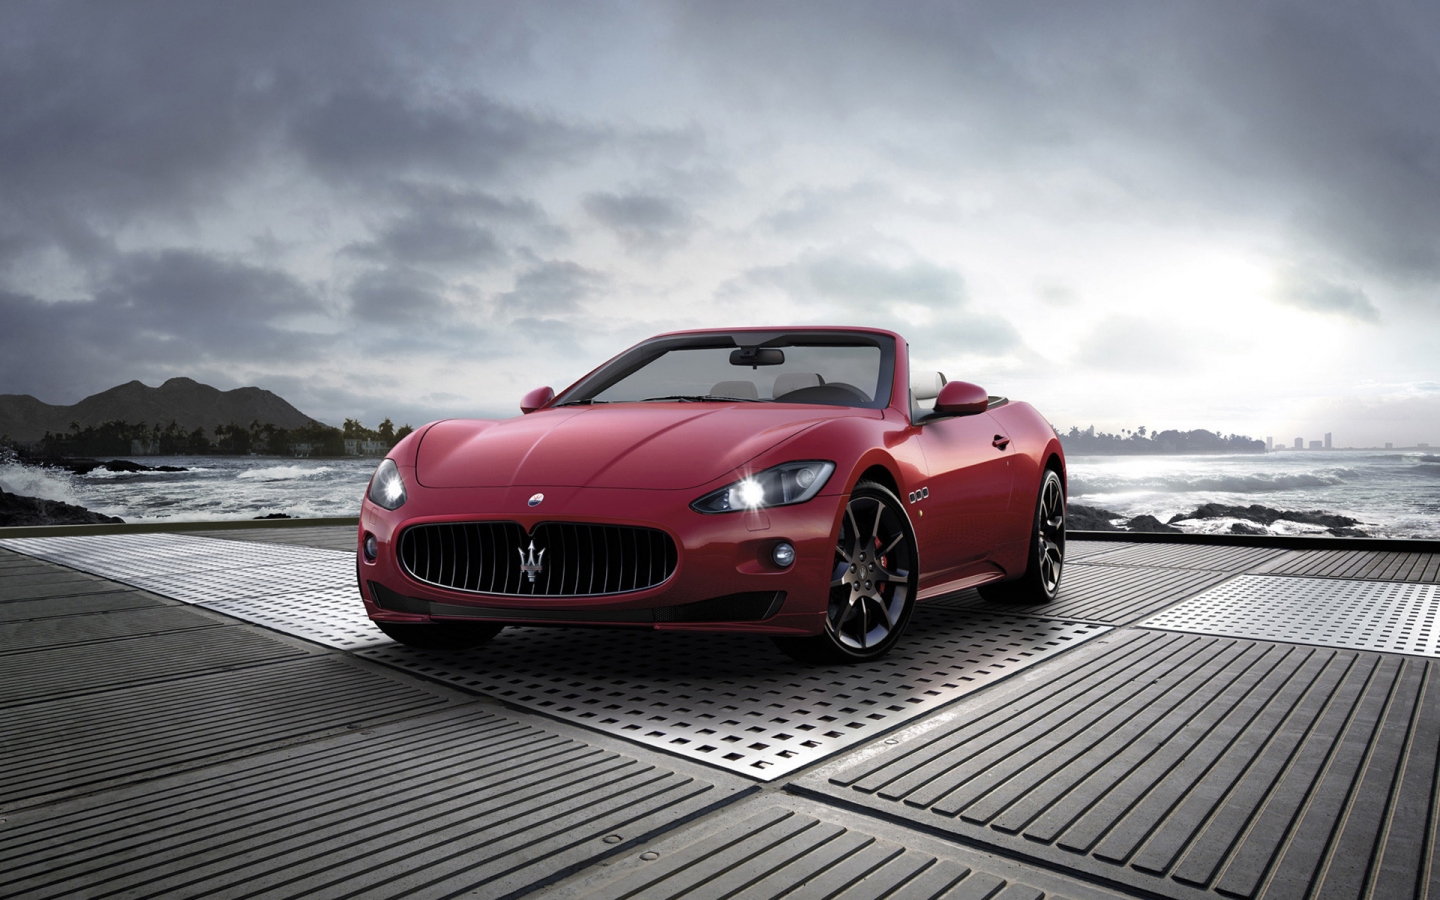 2011 Maserati GranCabrio Sport for 1440 x 900 widescreen resolution